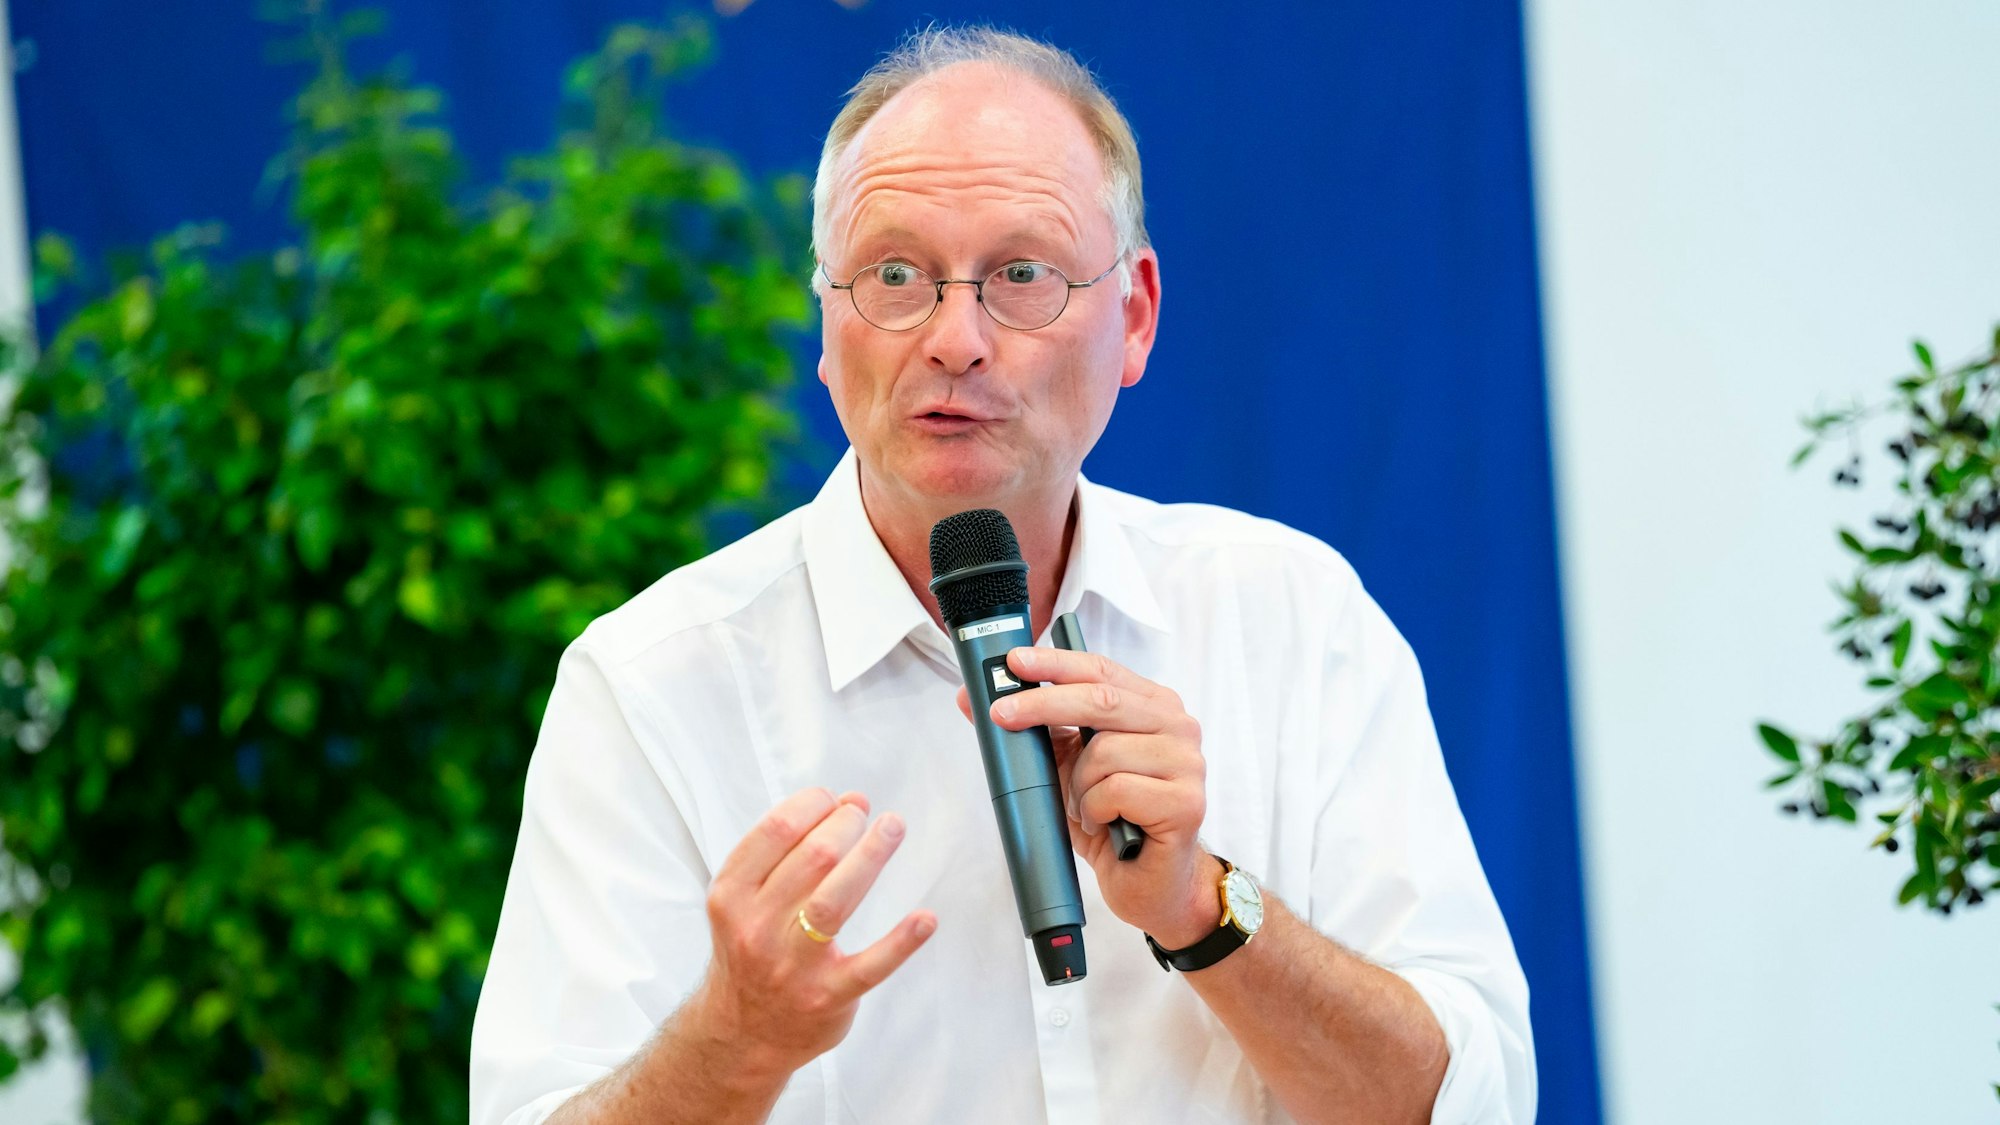 Wetterexperte und Meteorologe Sven Plöger hält bei einem Vortrag ein Mikrofon in der Hand. Er trägt ein weißes Hemd und eine Uhr.